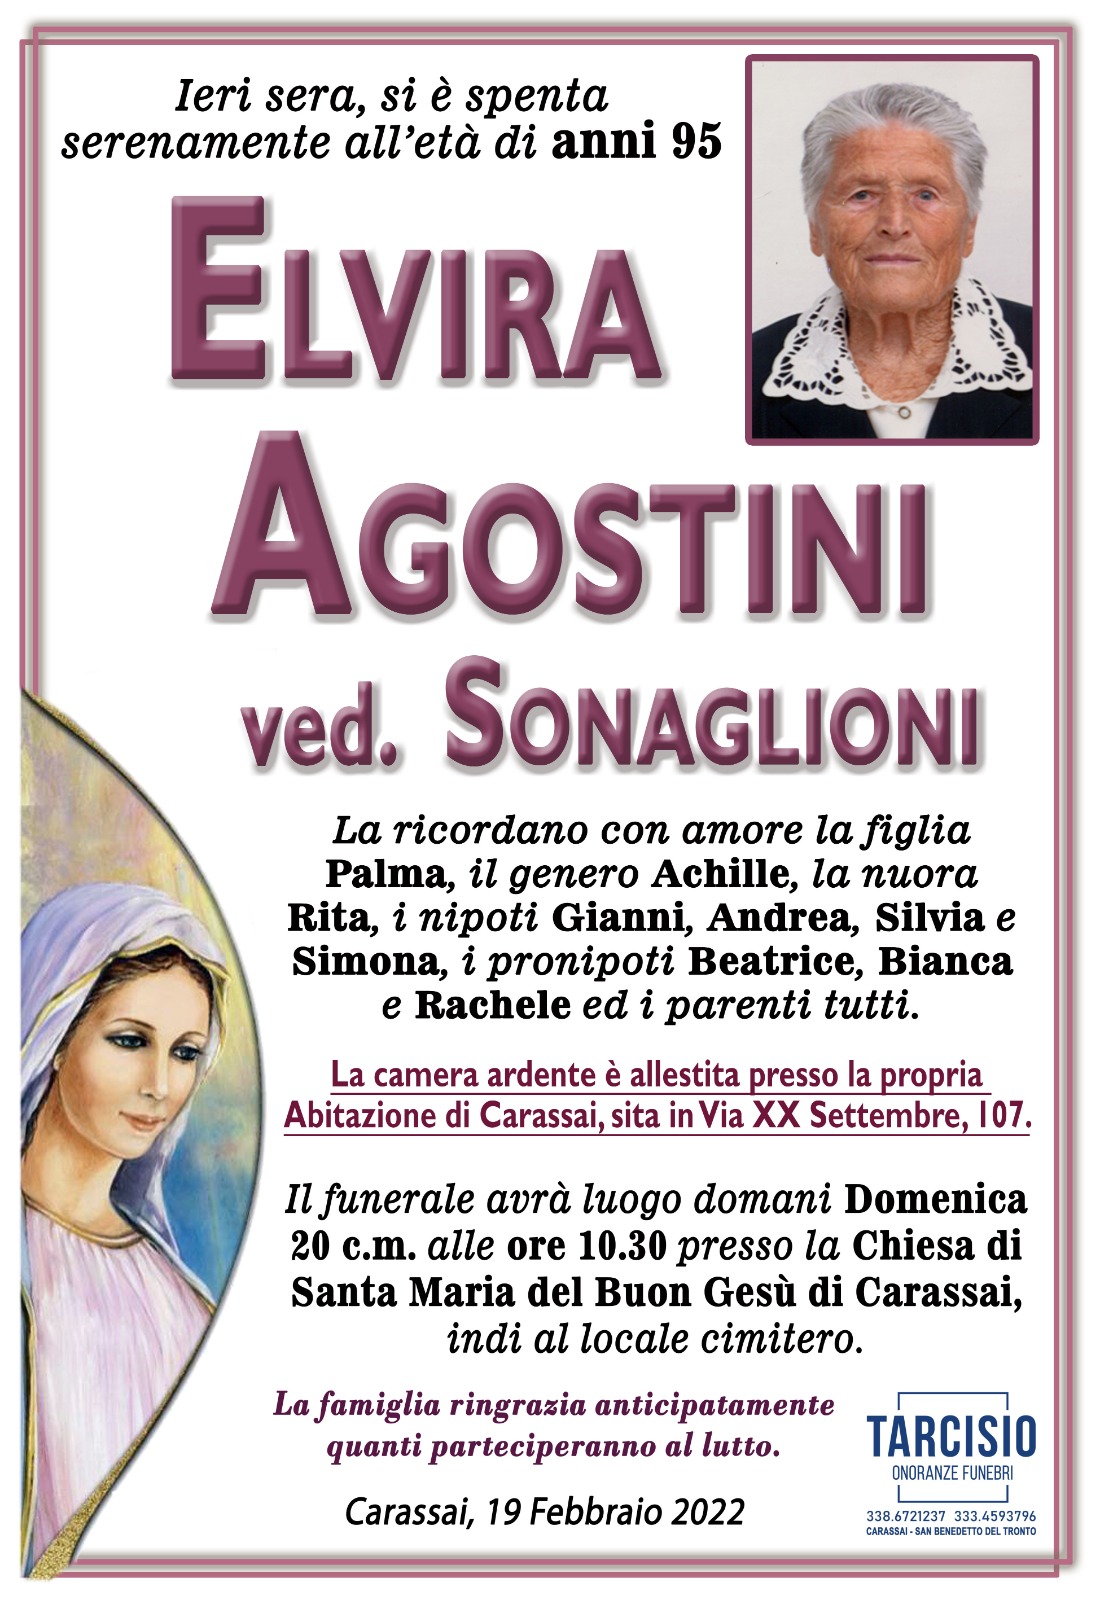 Elvira Agostini - Riviera Oggi